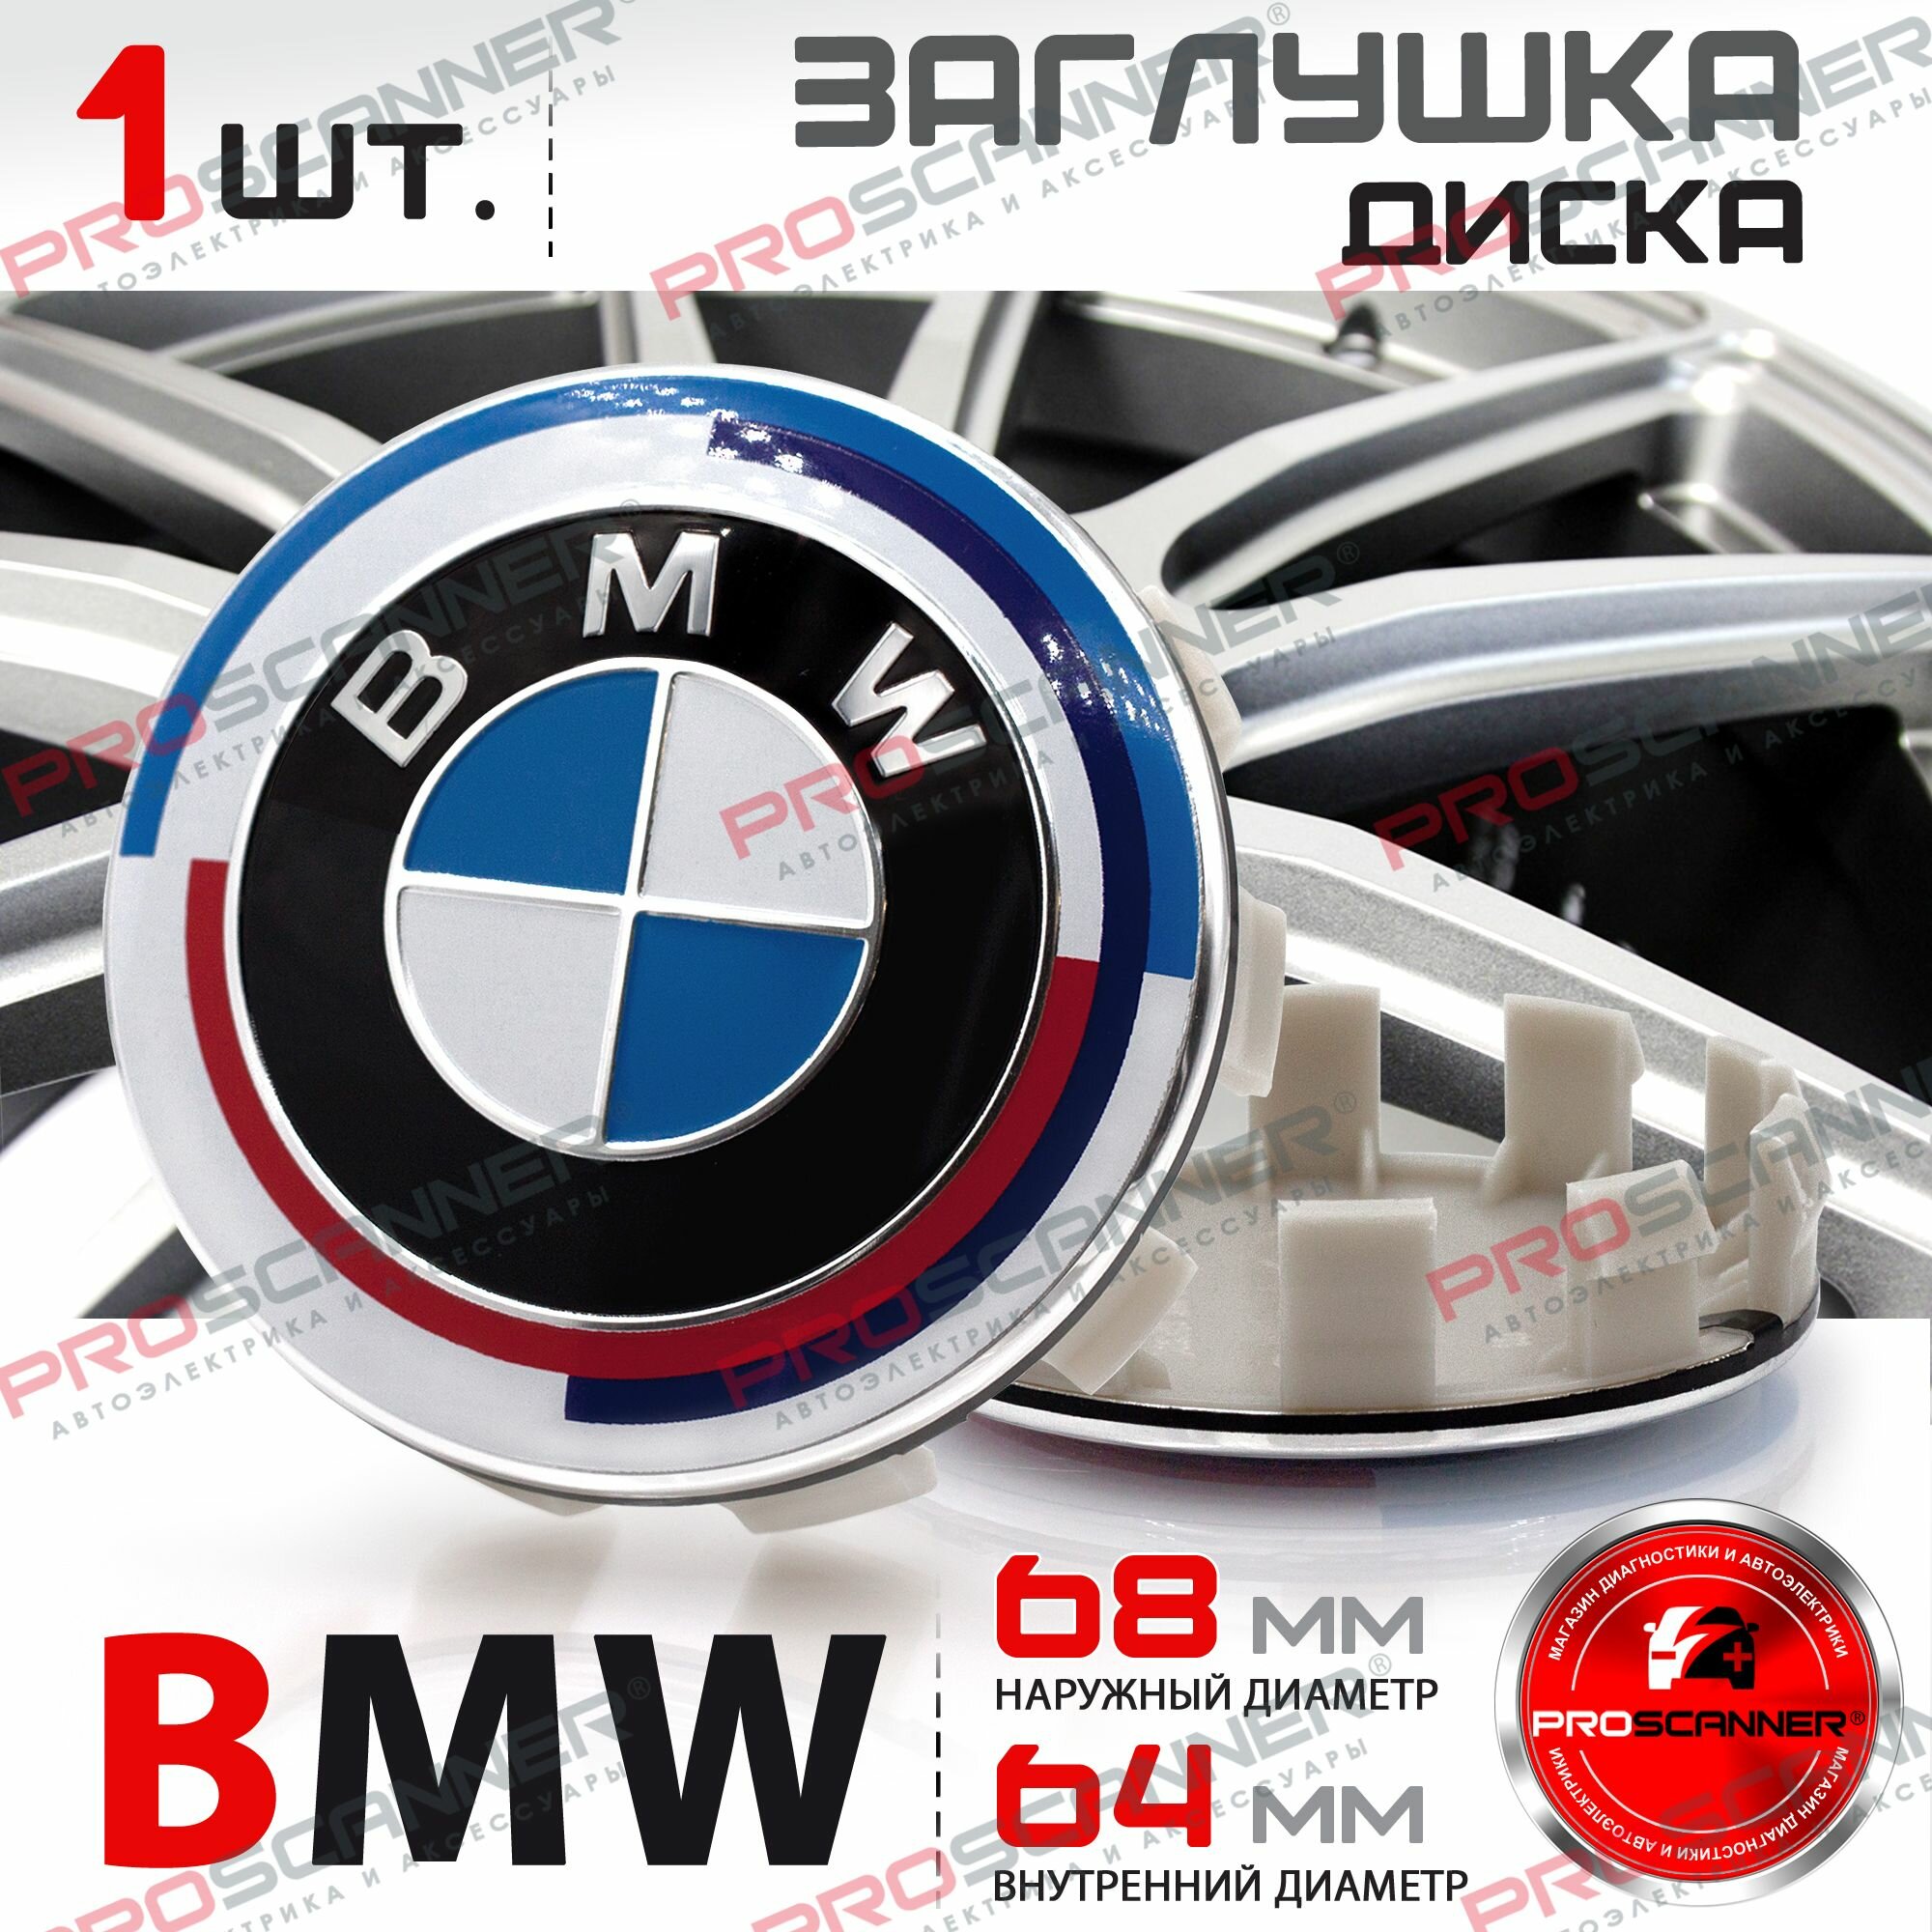 Колпачок заглушка на литой диск колеса для BMW БМВ 68 мм 36136783536 - 1 штука, юбилейная серия